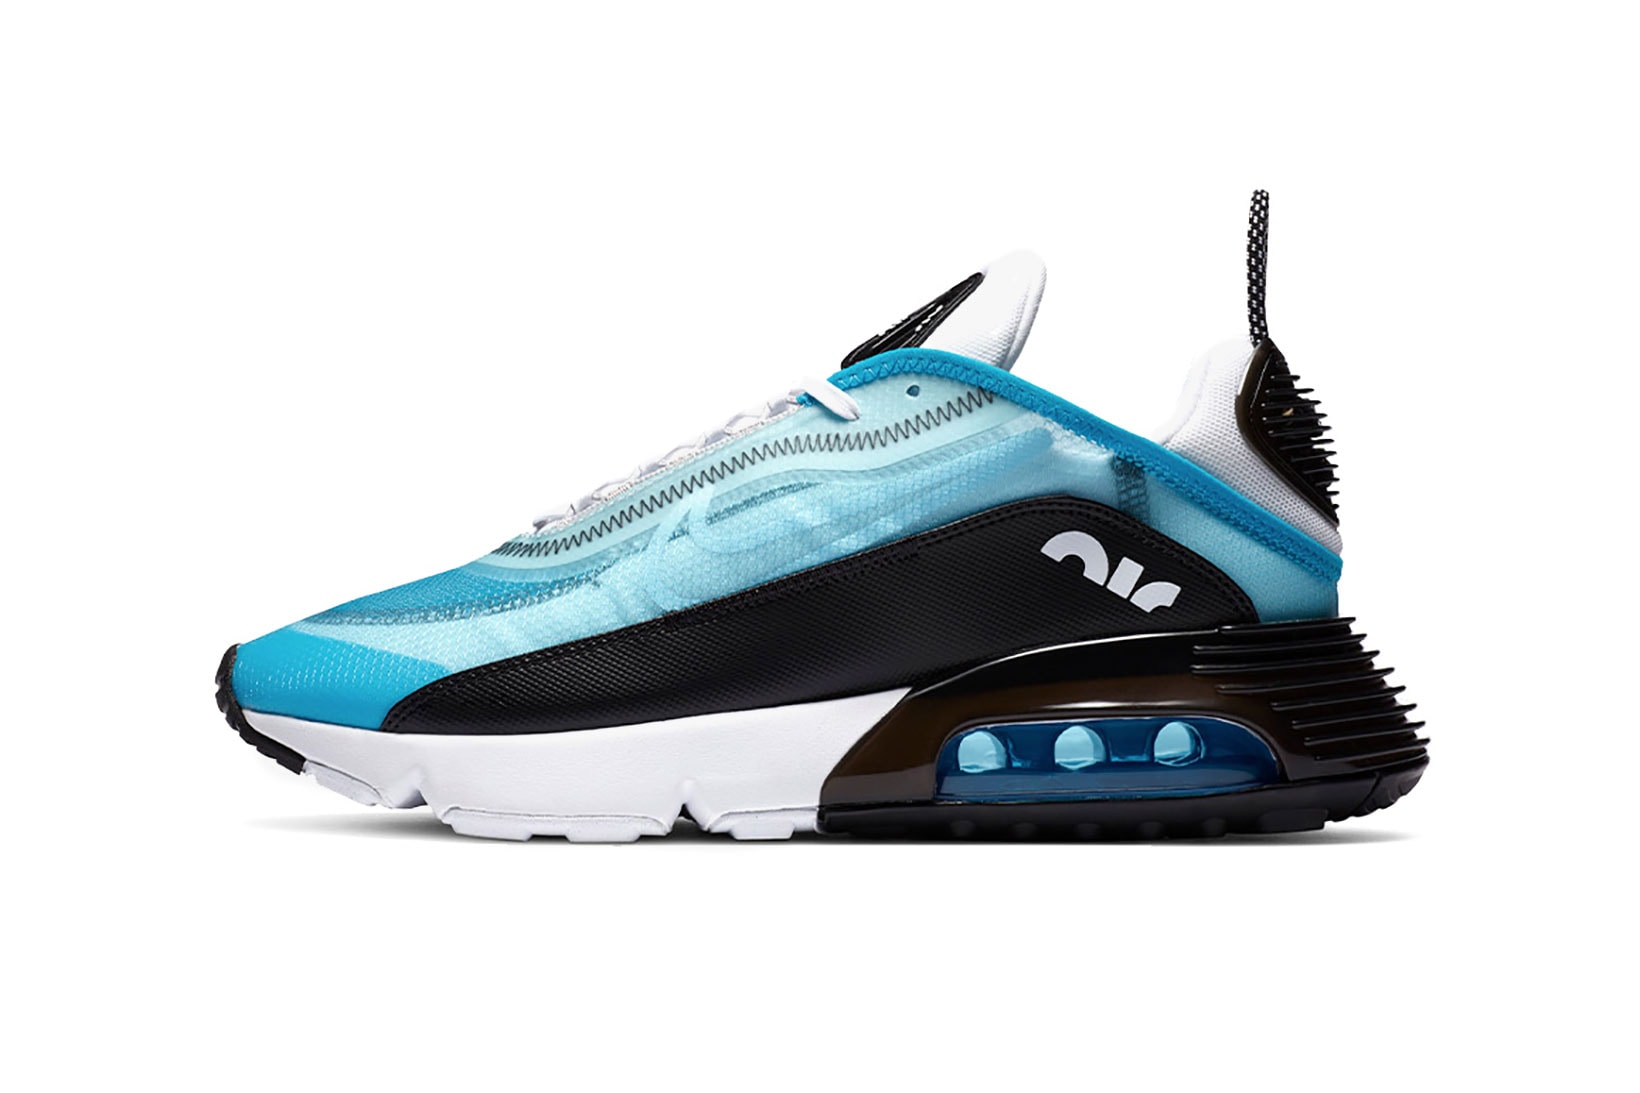 nike womens exclusive air max up sneakers shoes footwear sneakerhead pastel blue neon orange gray